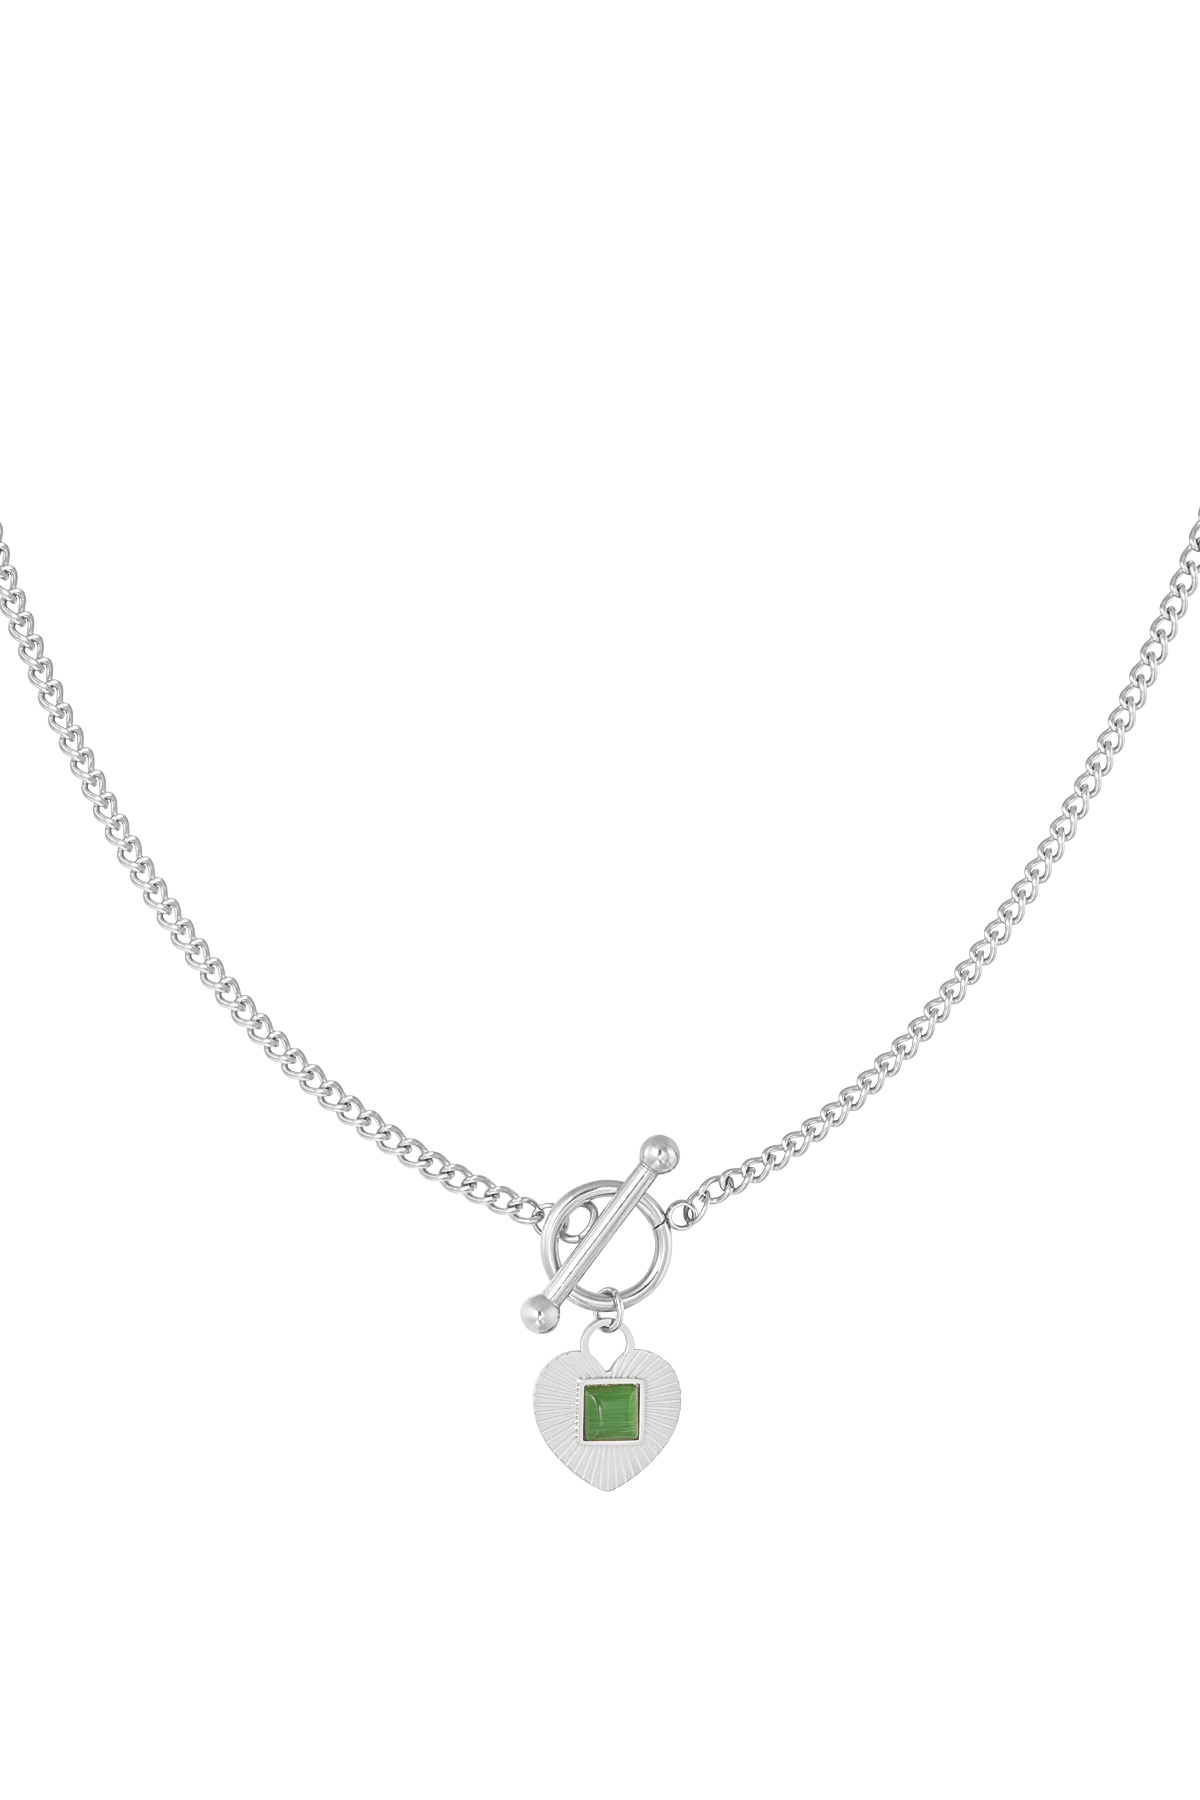 Chiusura tonda con catena e dettaglio cuore verde - argento h5 